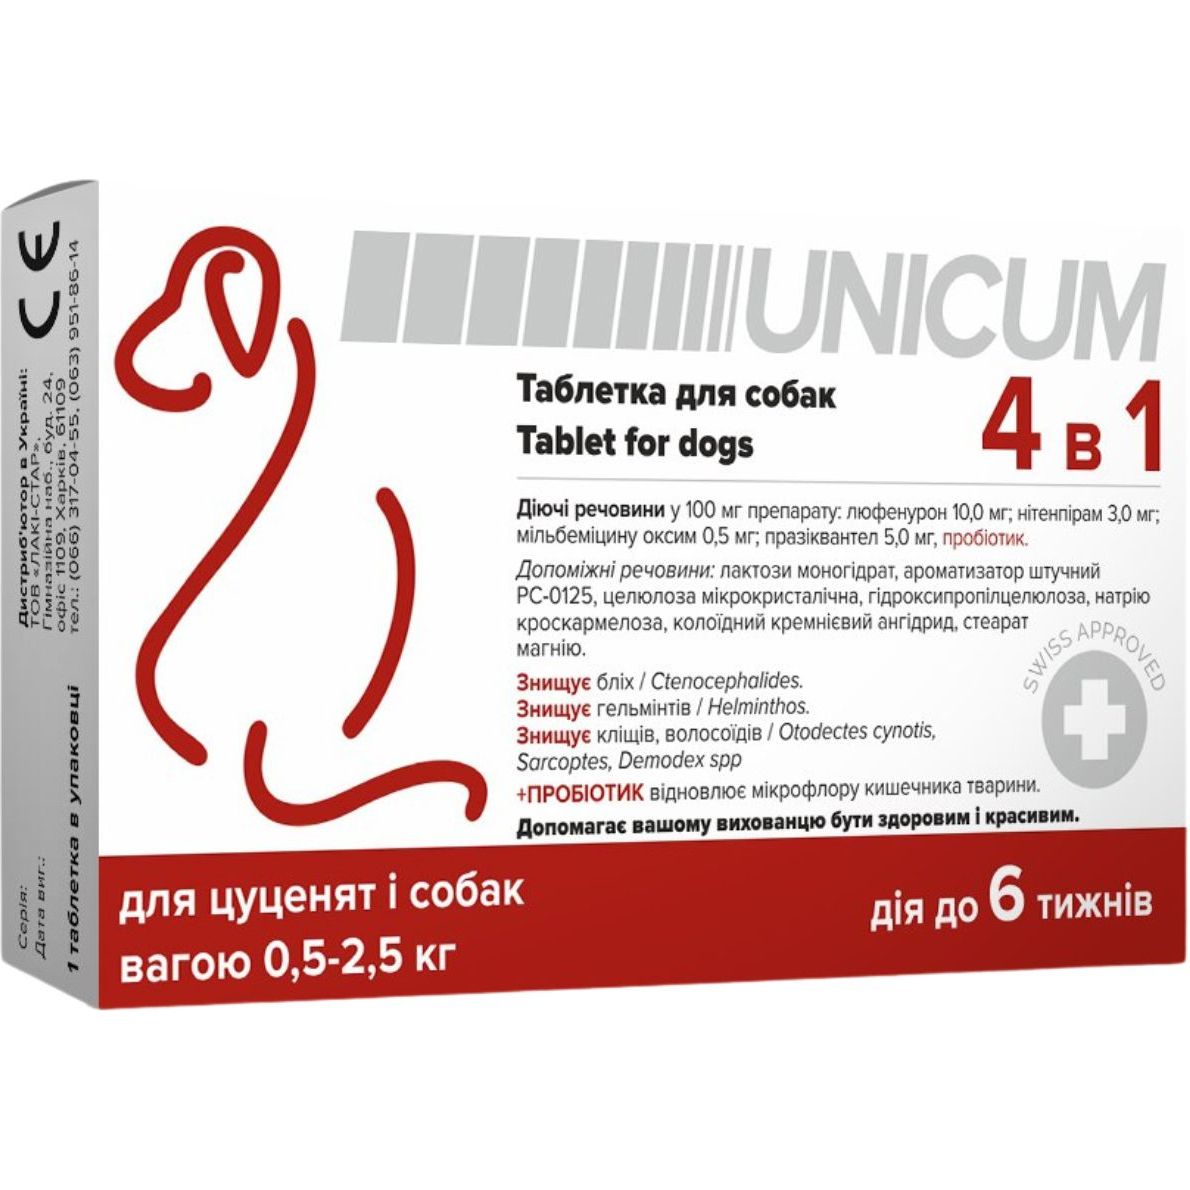 Таблетка для собак Unicum 4 в 1 от блох, клещей, гильминтов, с пробиотиком 0.5-2.5 кг - фото 1